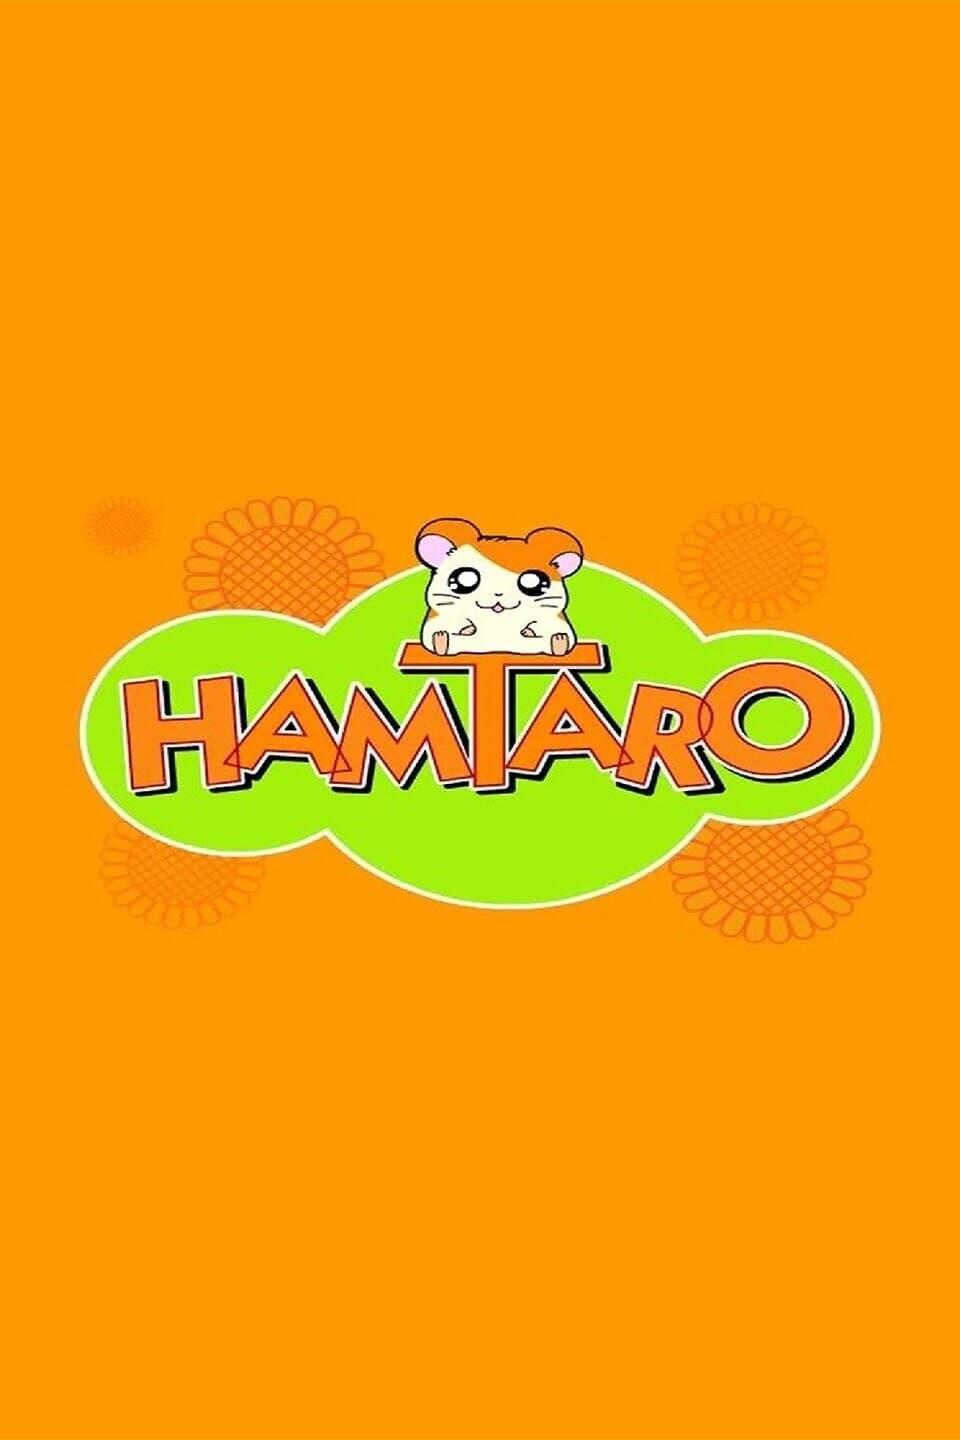 Hamtaro poster